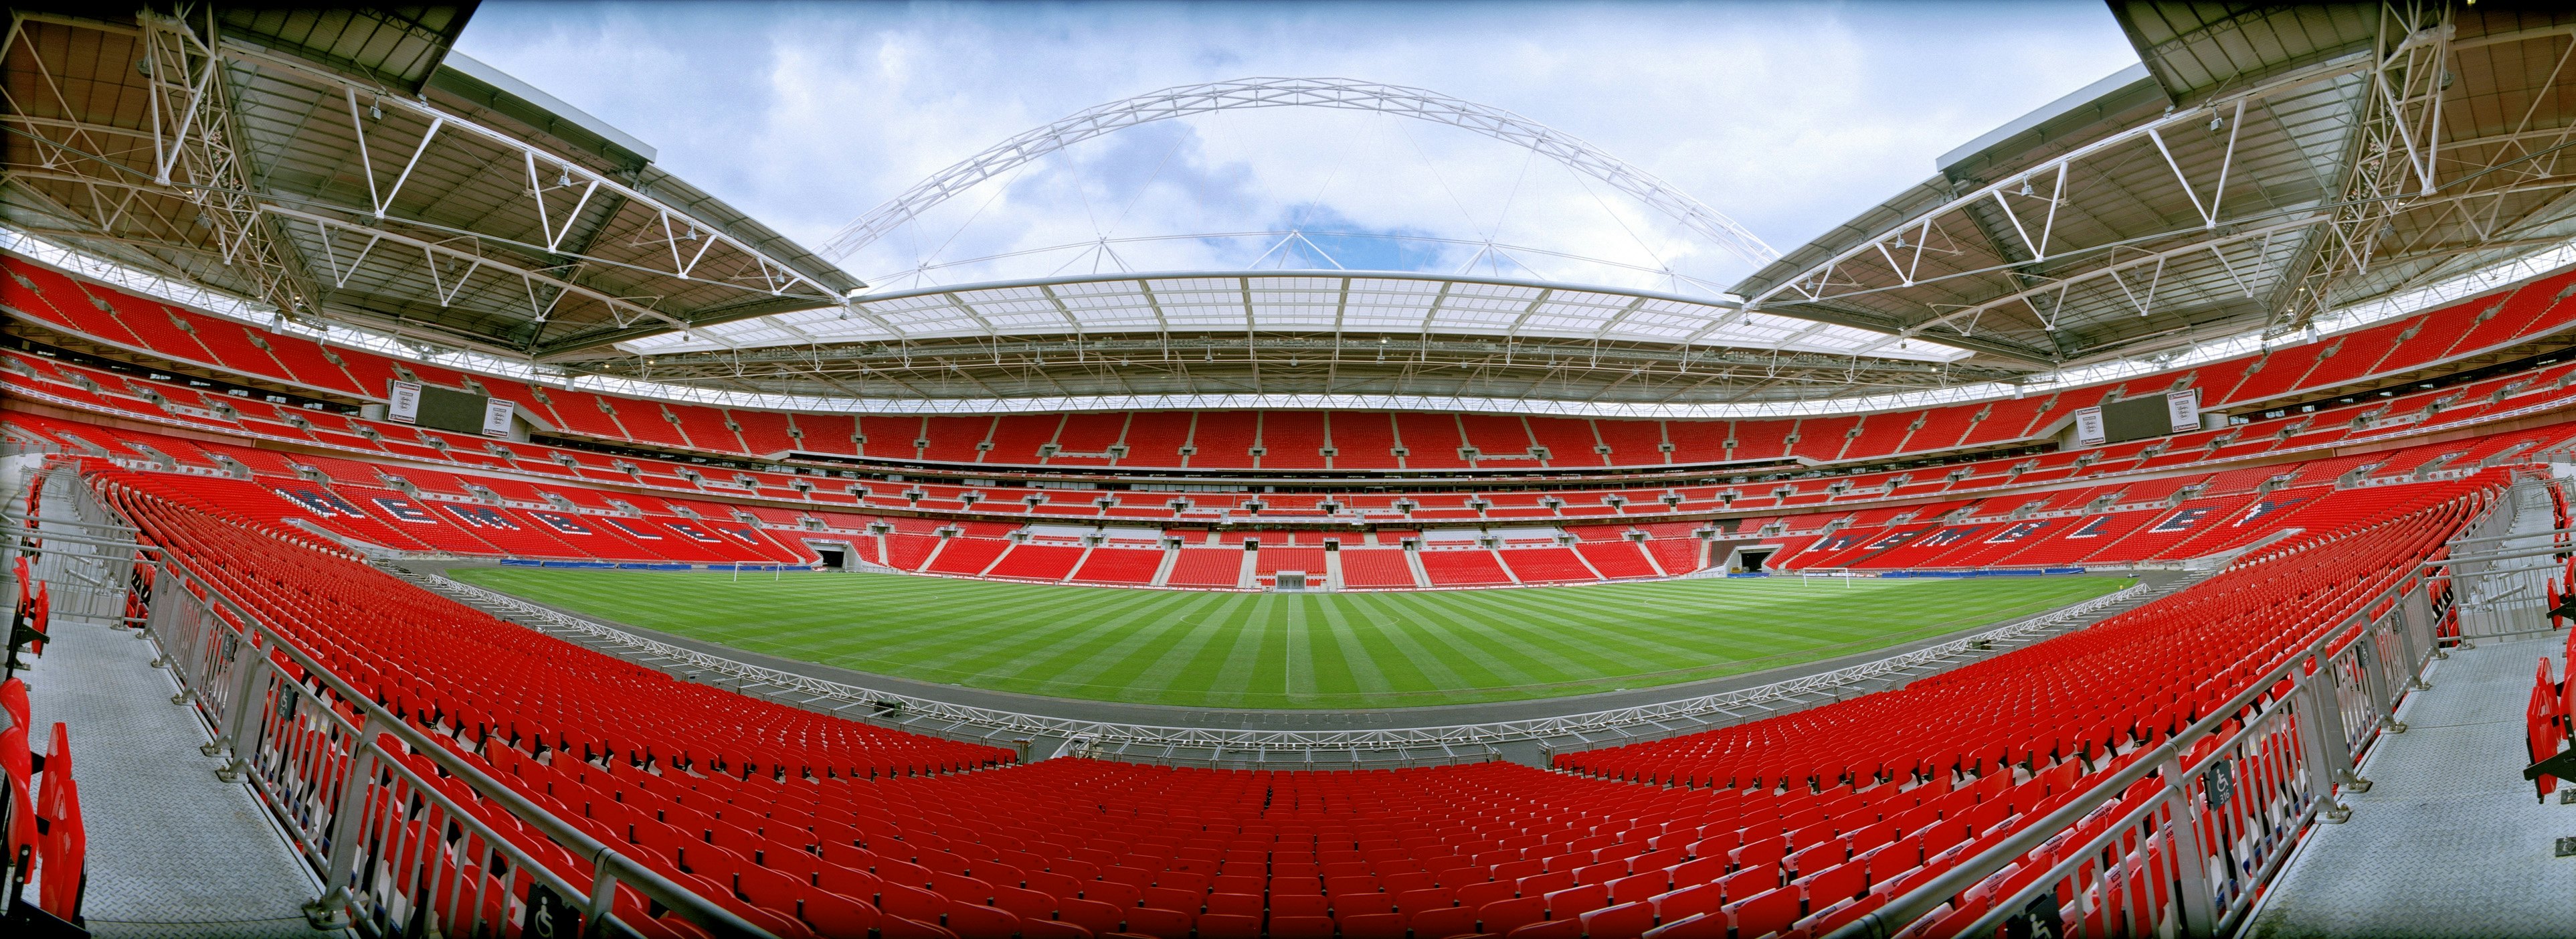 Tickets Wembley Stadium - London | Tiqets.com